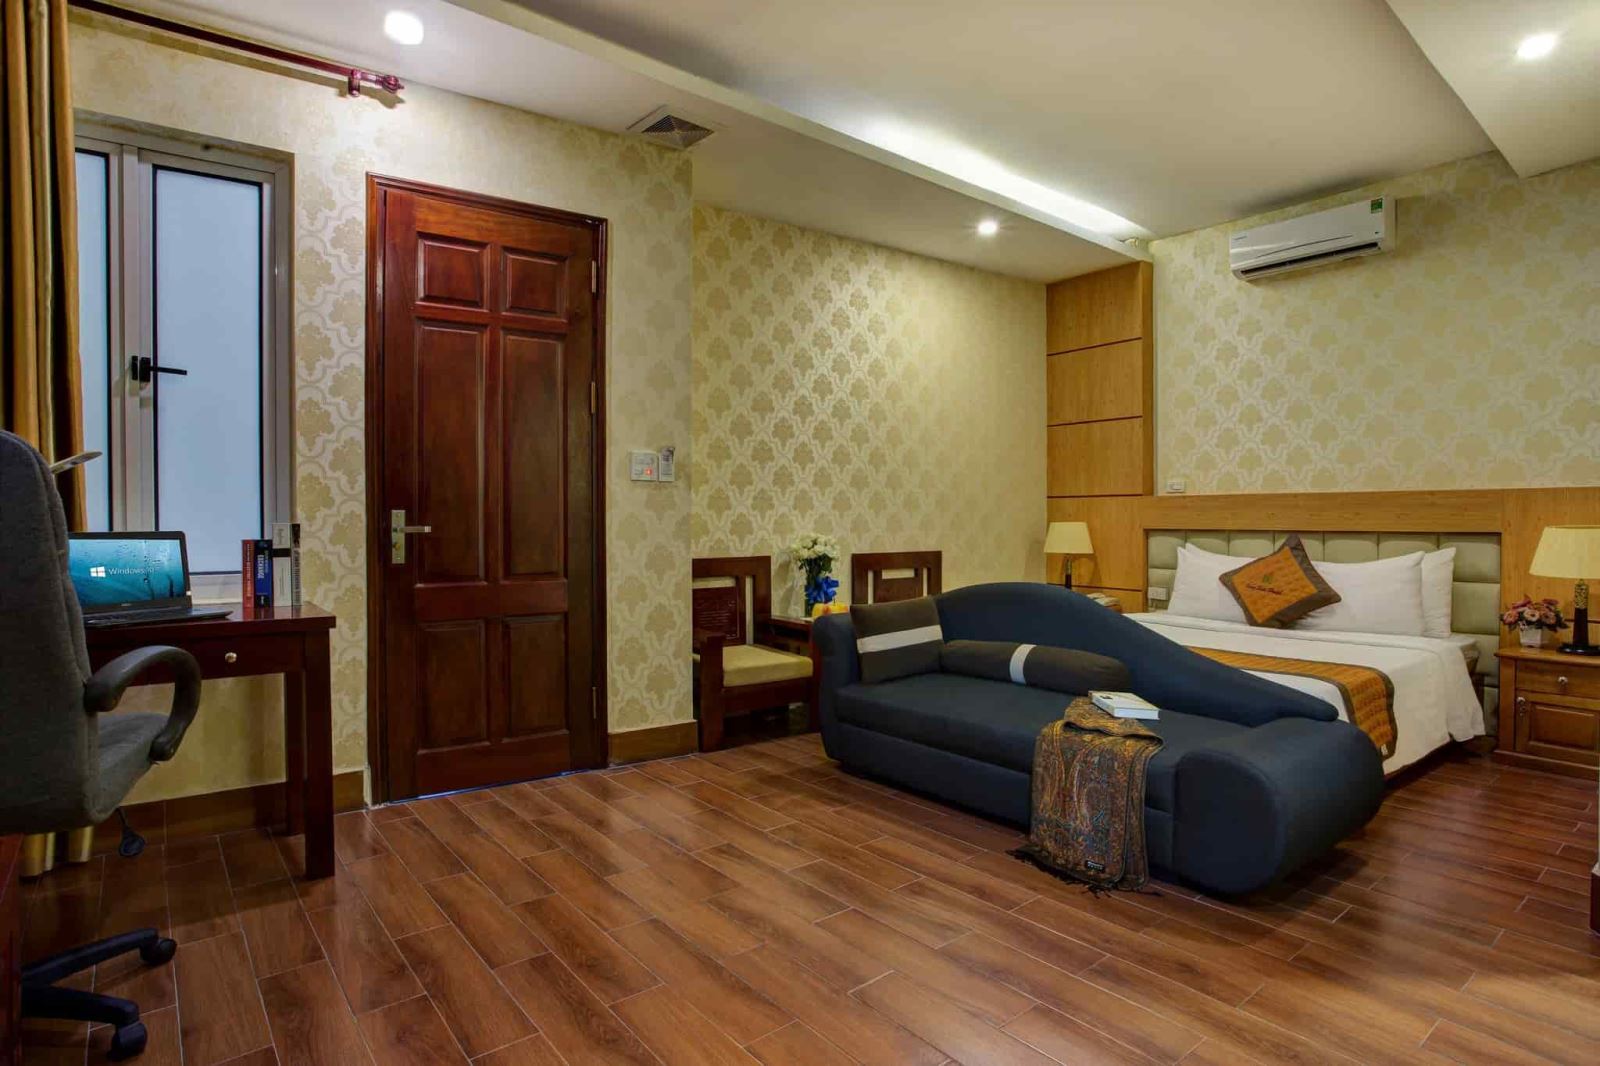 Giá khách sạn Hà Nội có thực sự đắt đỏ như bạn vẫn nghĩ?